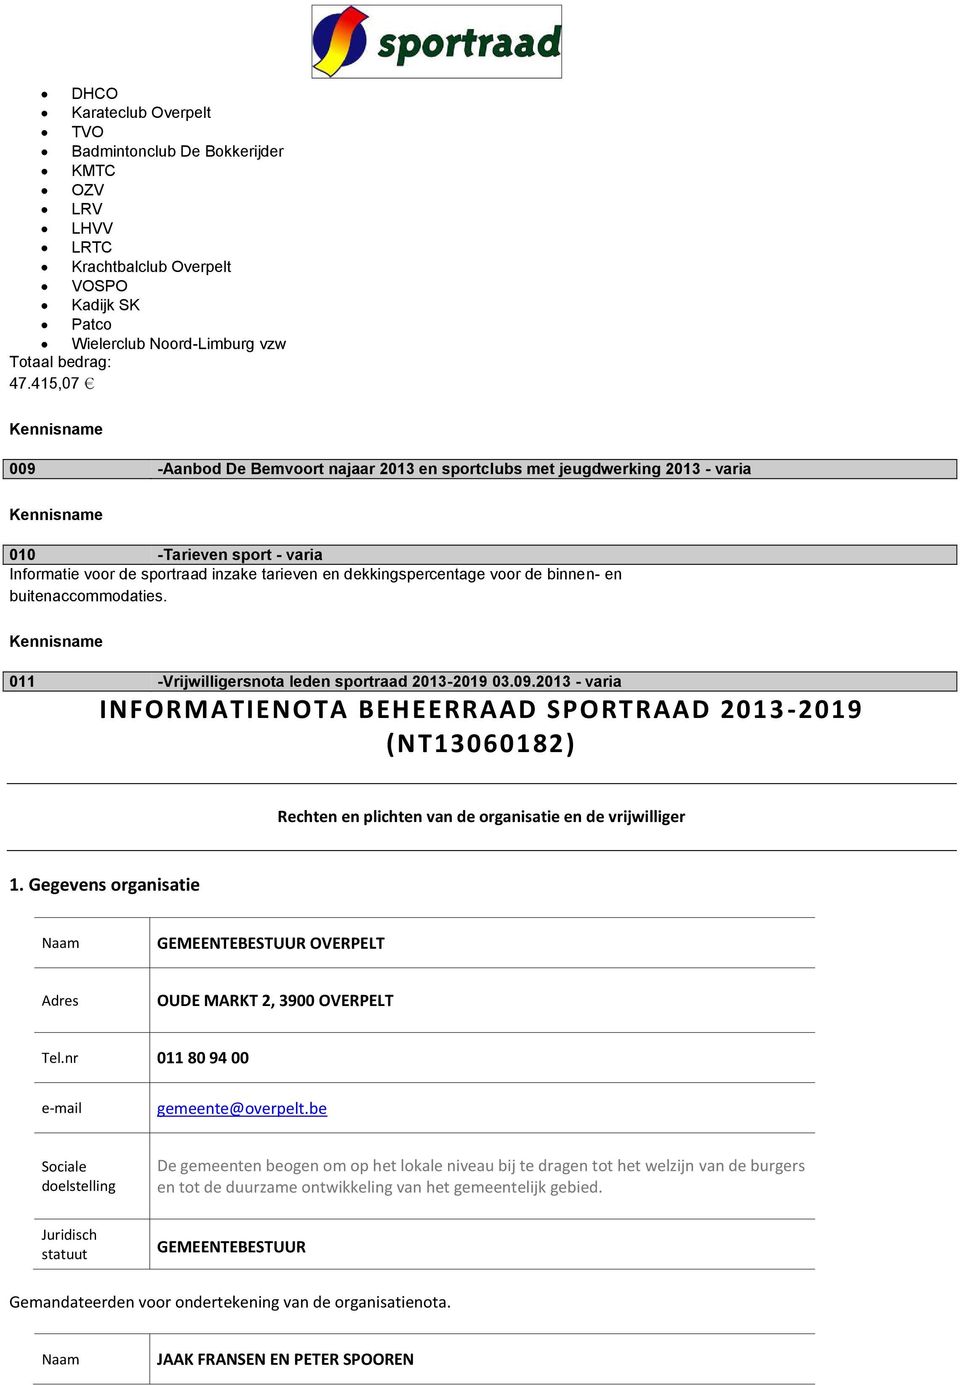 en buitenaccommodaties. 011 -Vrijwilligersnota leden sportraad 2013-2019 03.09.